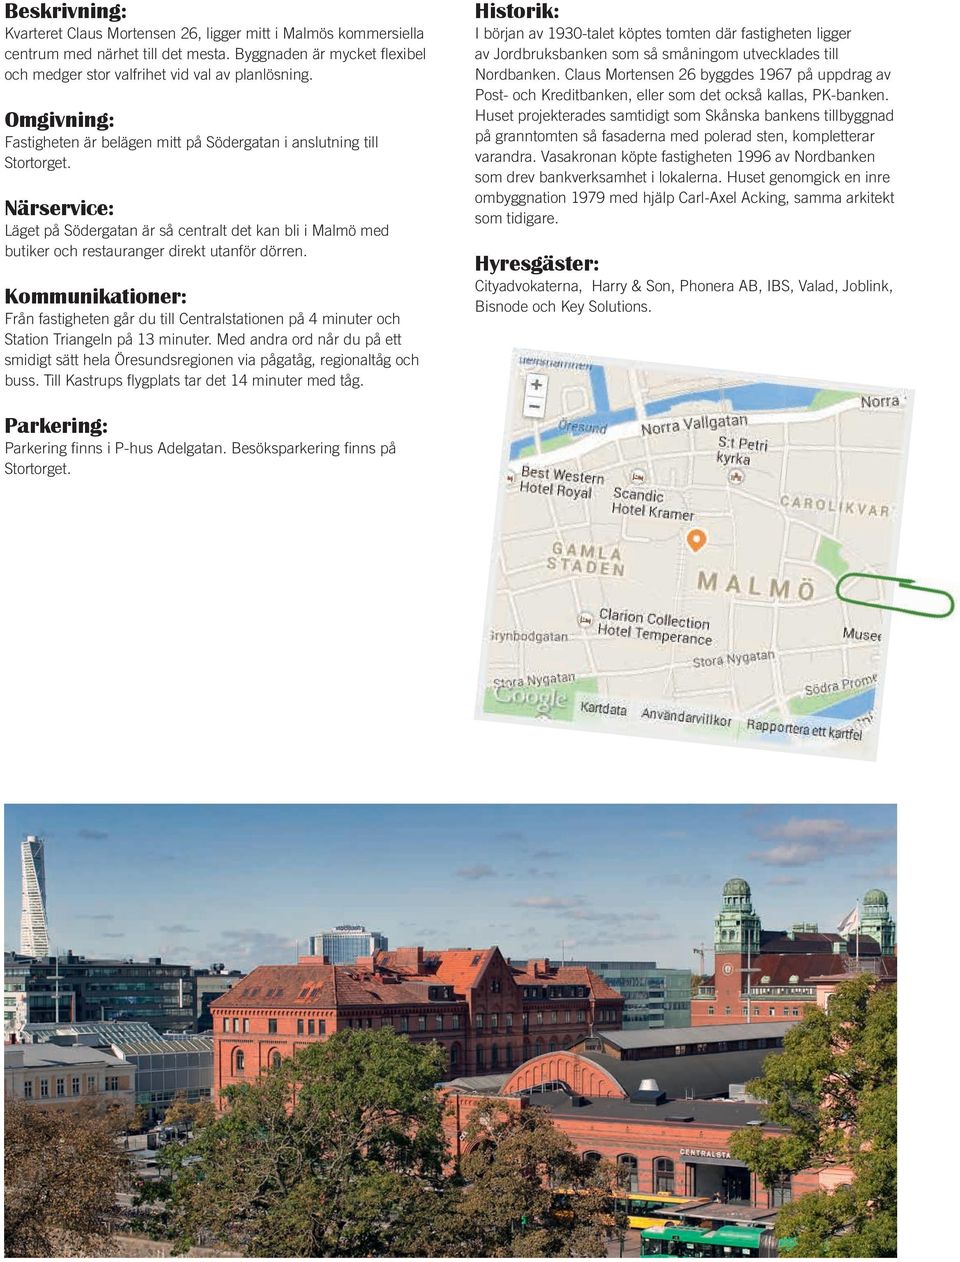 Närservice: Läget på Södergatan är så centralt det kan bli i Malmö med butiker och restauranger direkt utanför dörren.